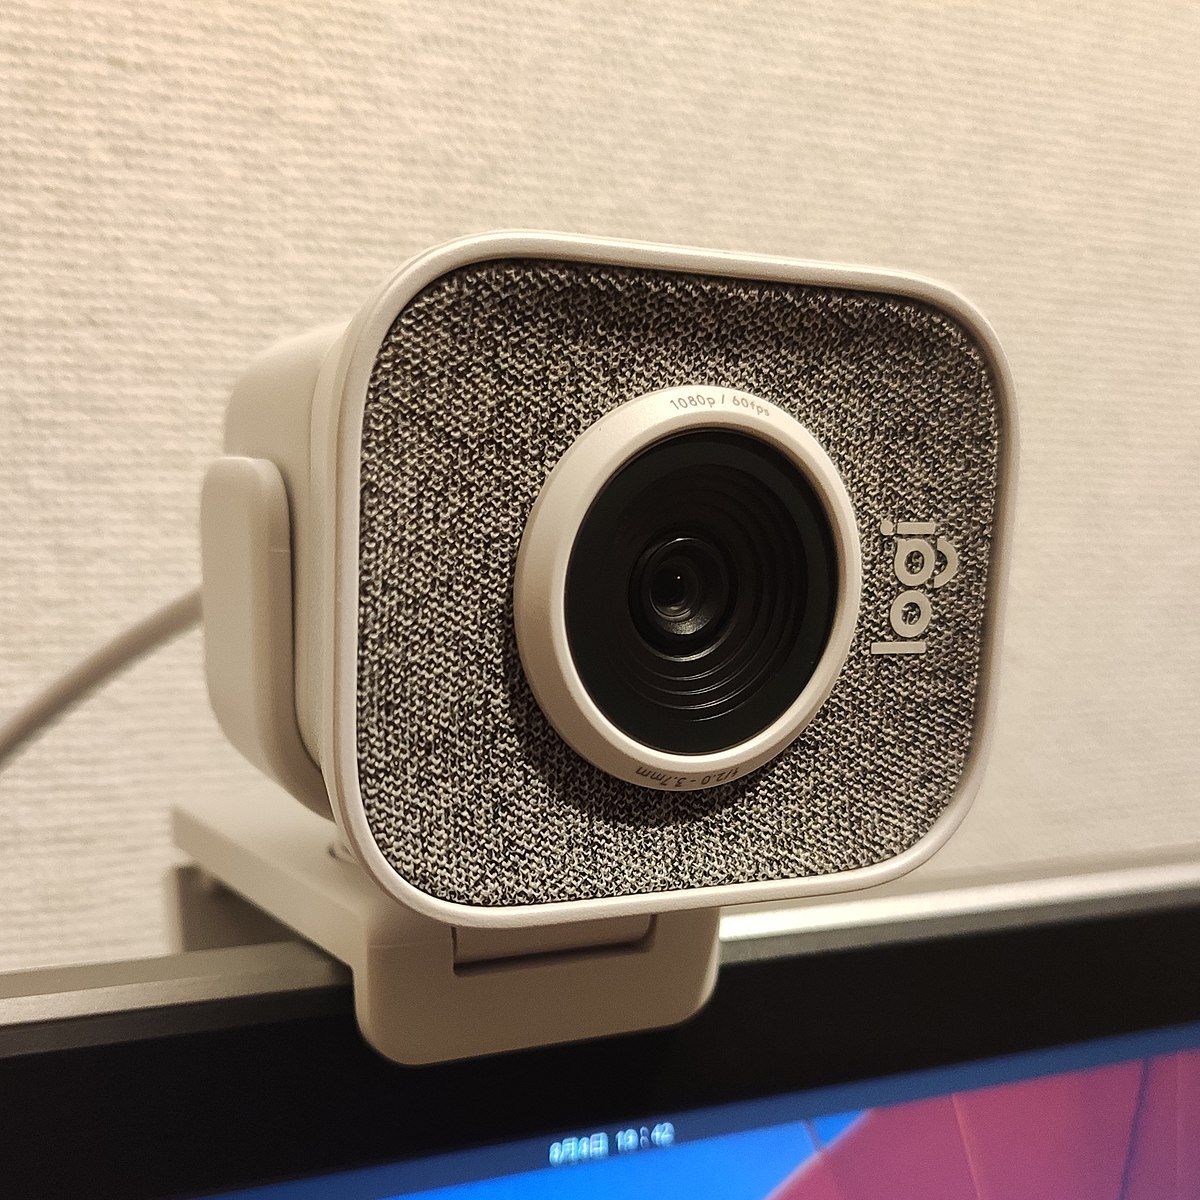 bonnie pilon recommends Prono Webcam